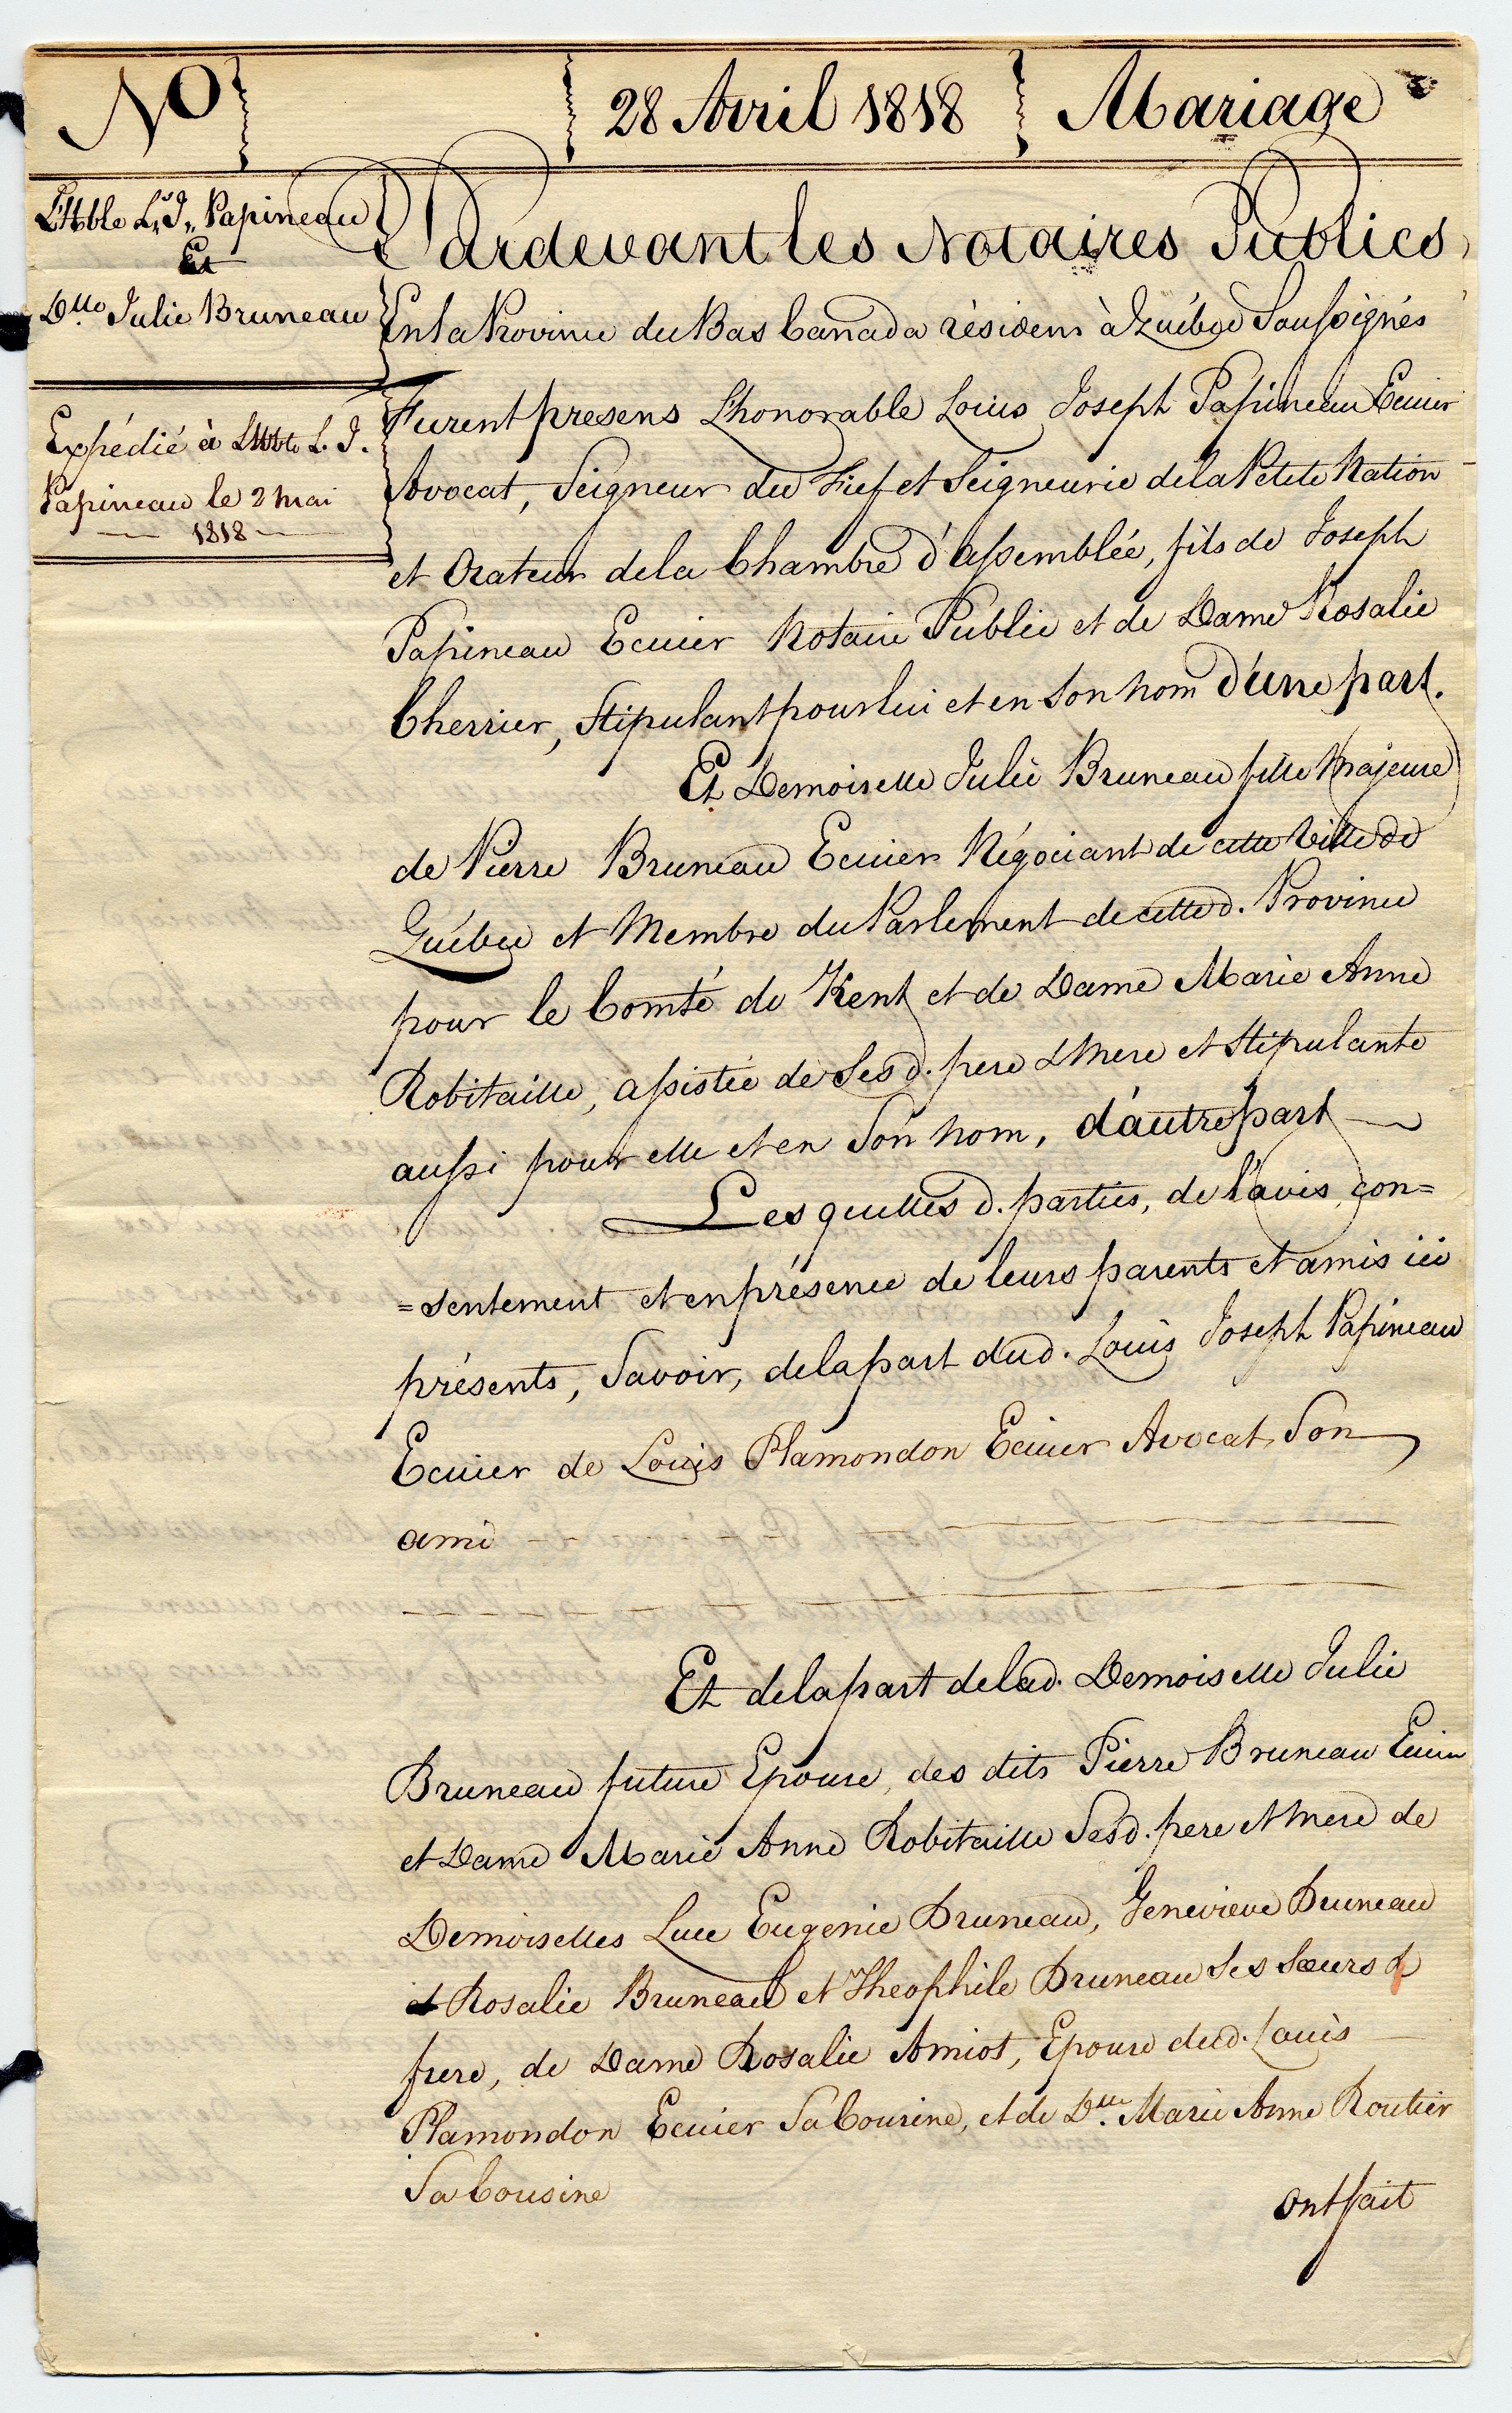 Acte de notaire manuscrit datant de 1818 documentant le contrat de mariage de Louis-Joseph Papineau et Rosalie Cherrier